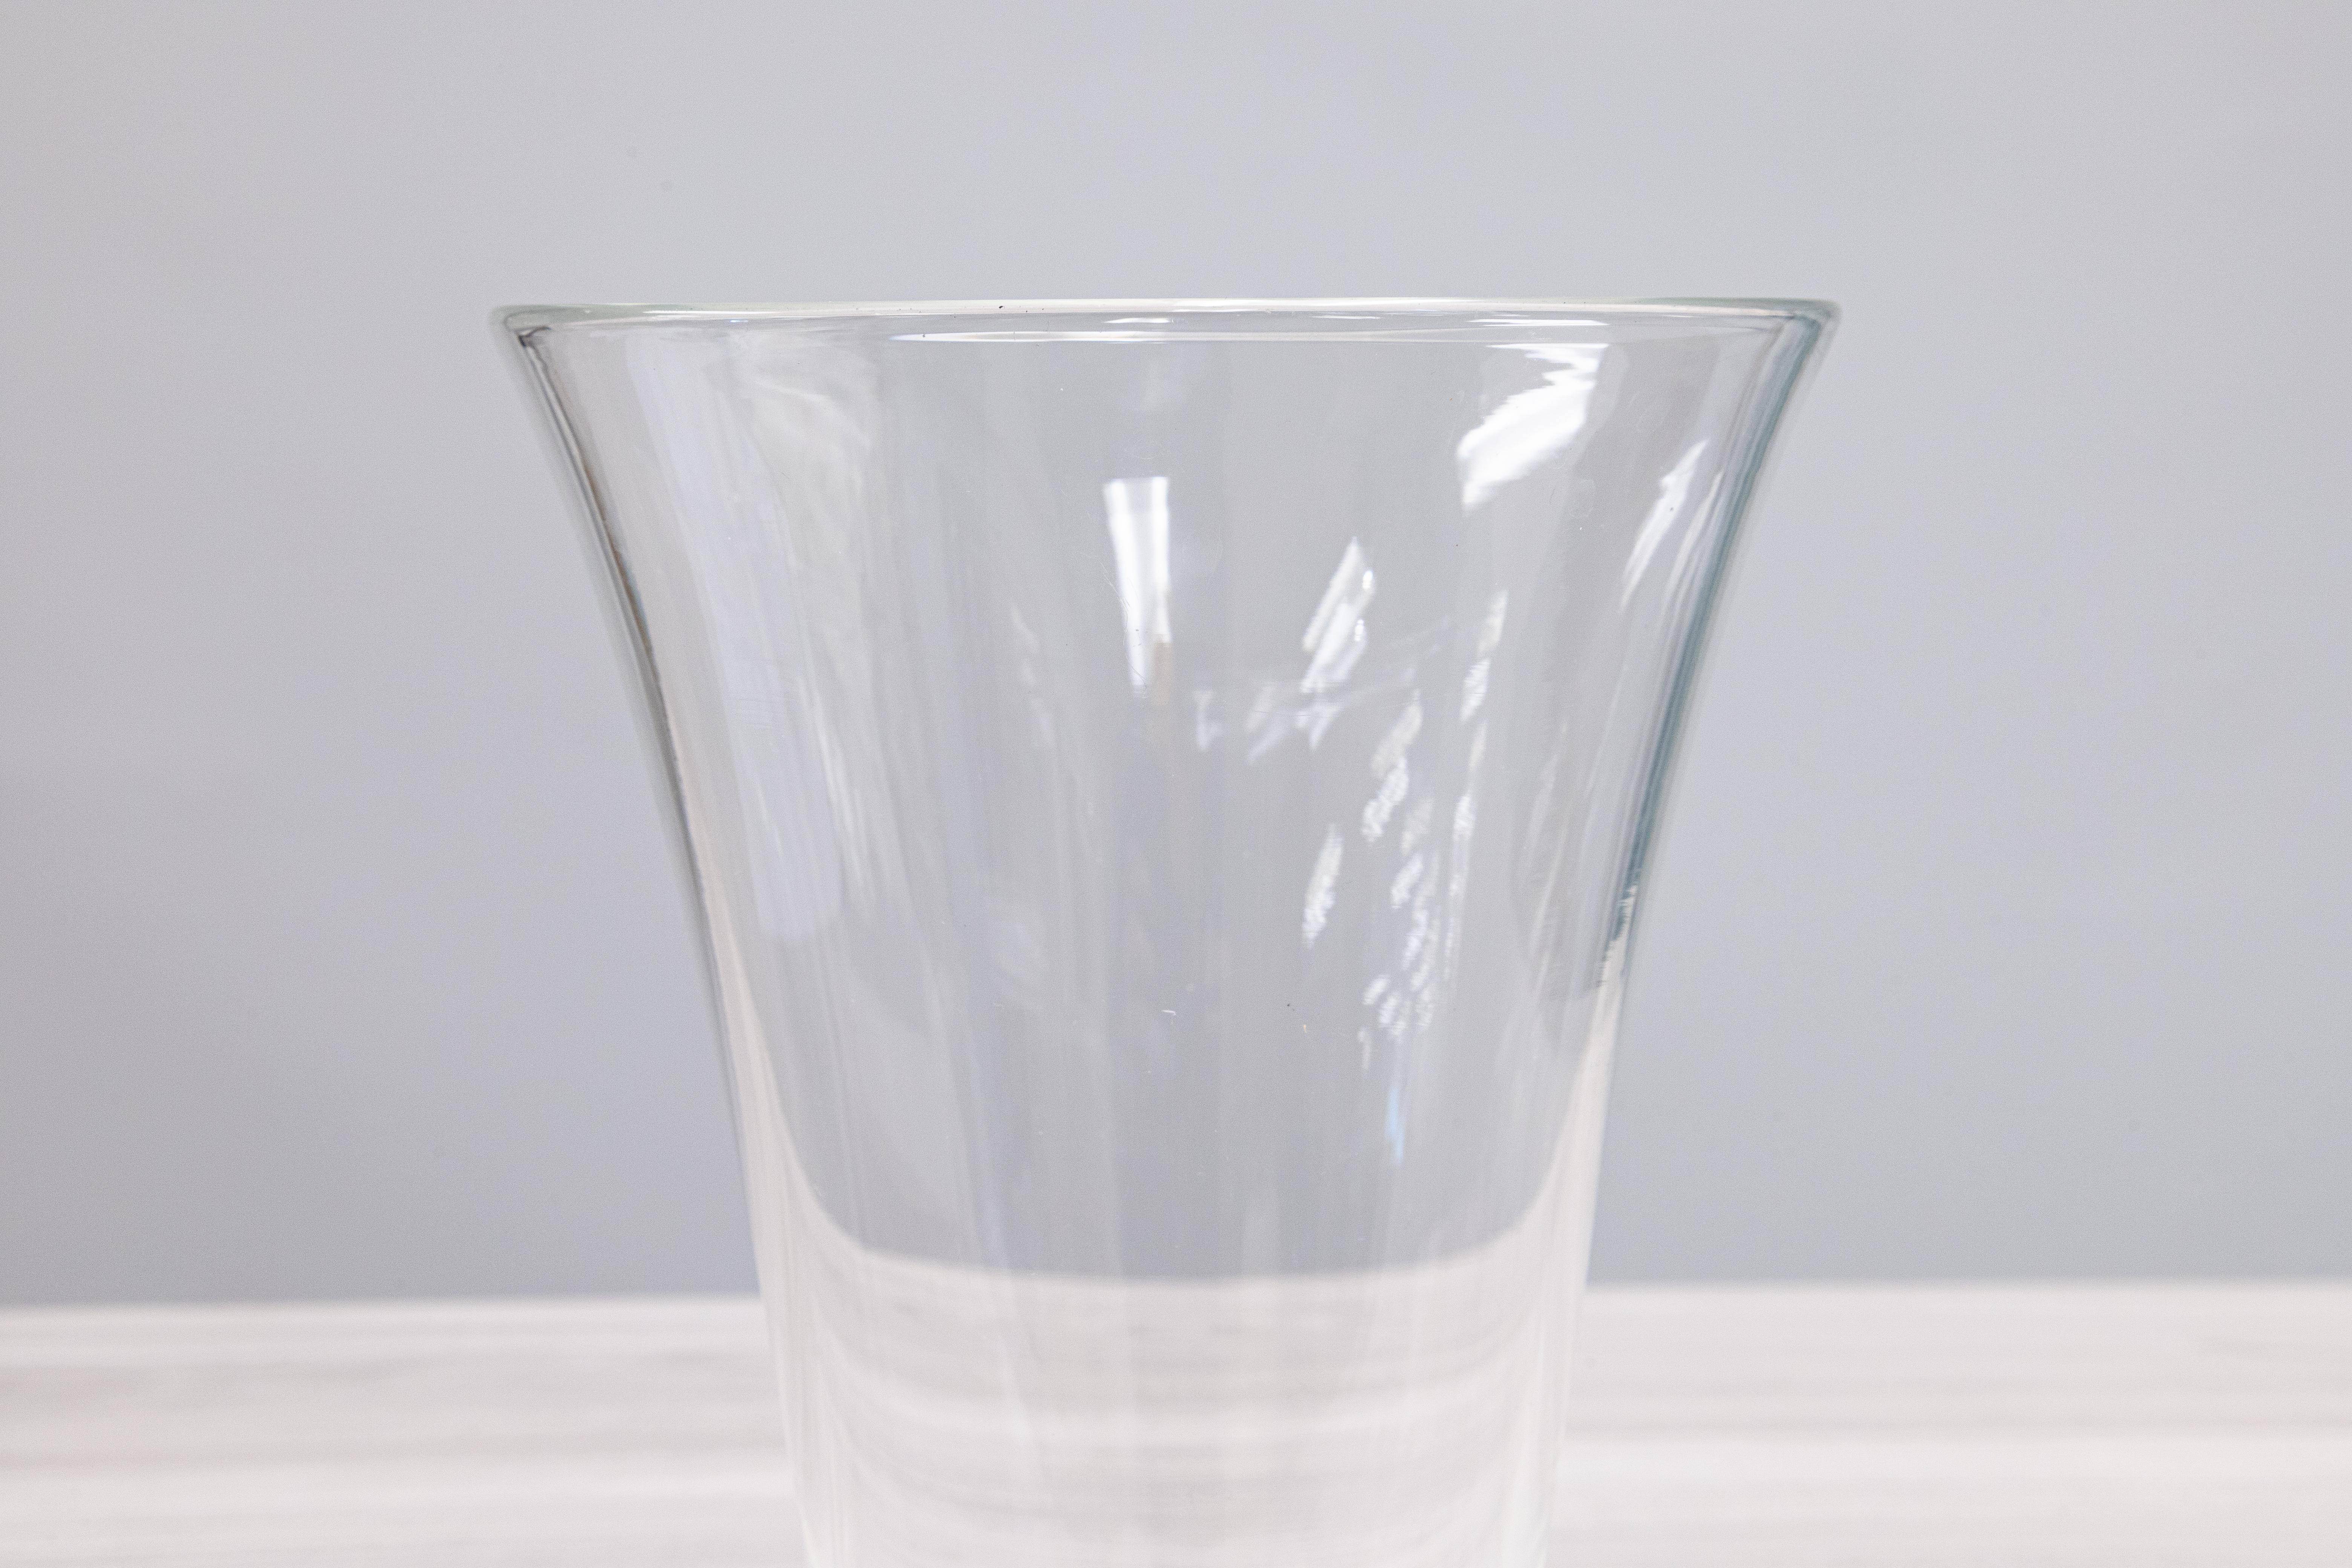 Un beau vase avec un design élégant de l'artiste George Thompson pour Steuben glass company. Ce grand et joli vase se caractérise par un cristal soufflé à la main, de merveilleuses lignes de silhouette et une base lourde. Cette pièce est signée sur